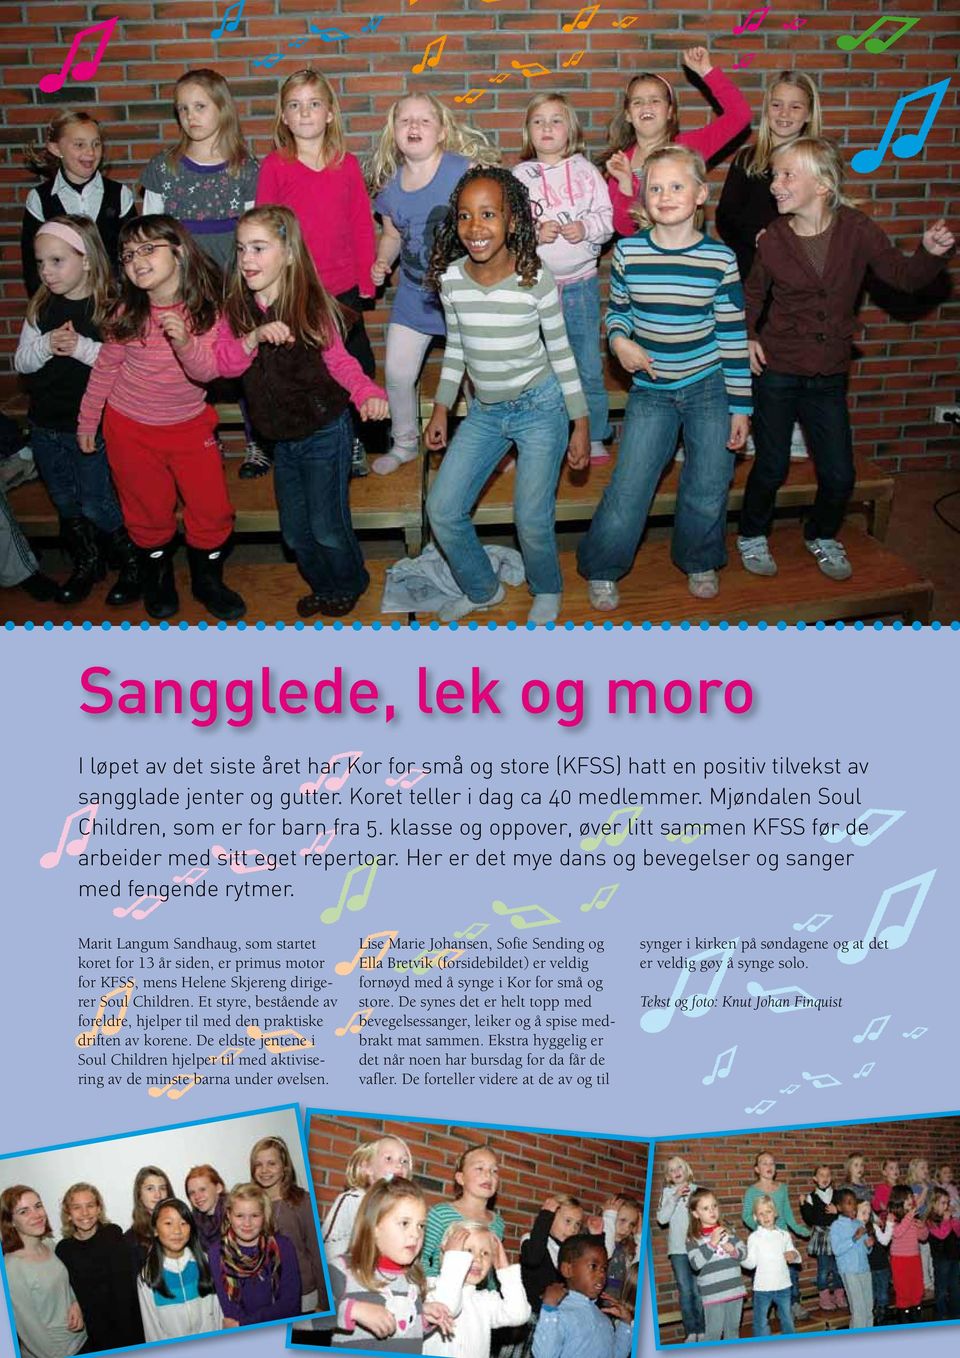 Marit Langum Sandhaug, som startet koret for 13 år siden, er primus motor for KFSS, mens Helene Skjereng dirigerer Soul Children.